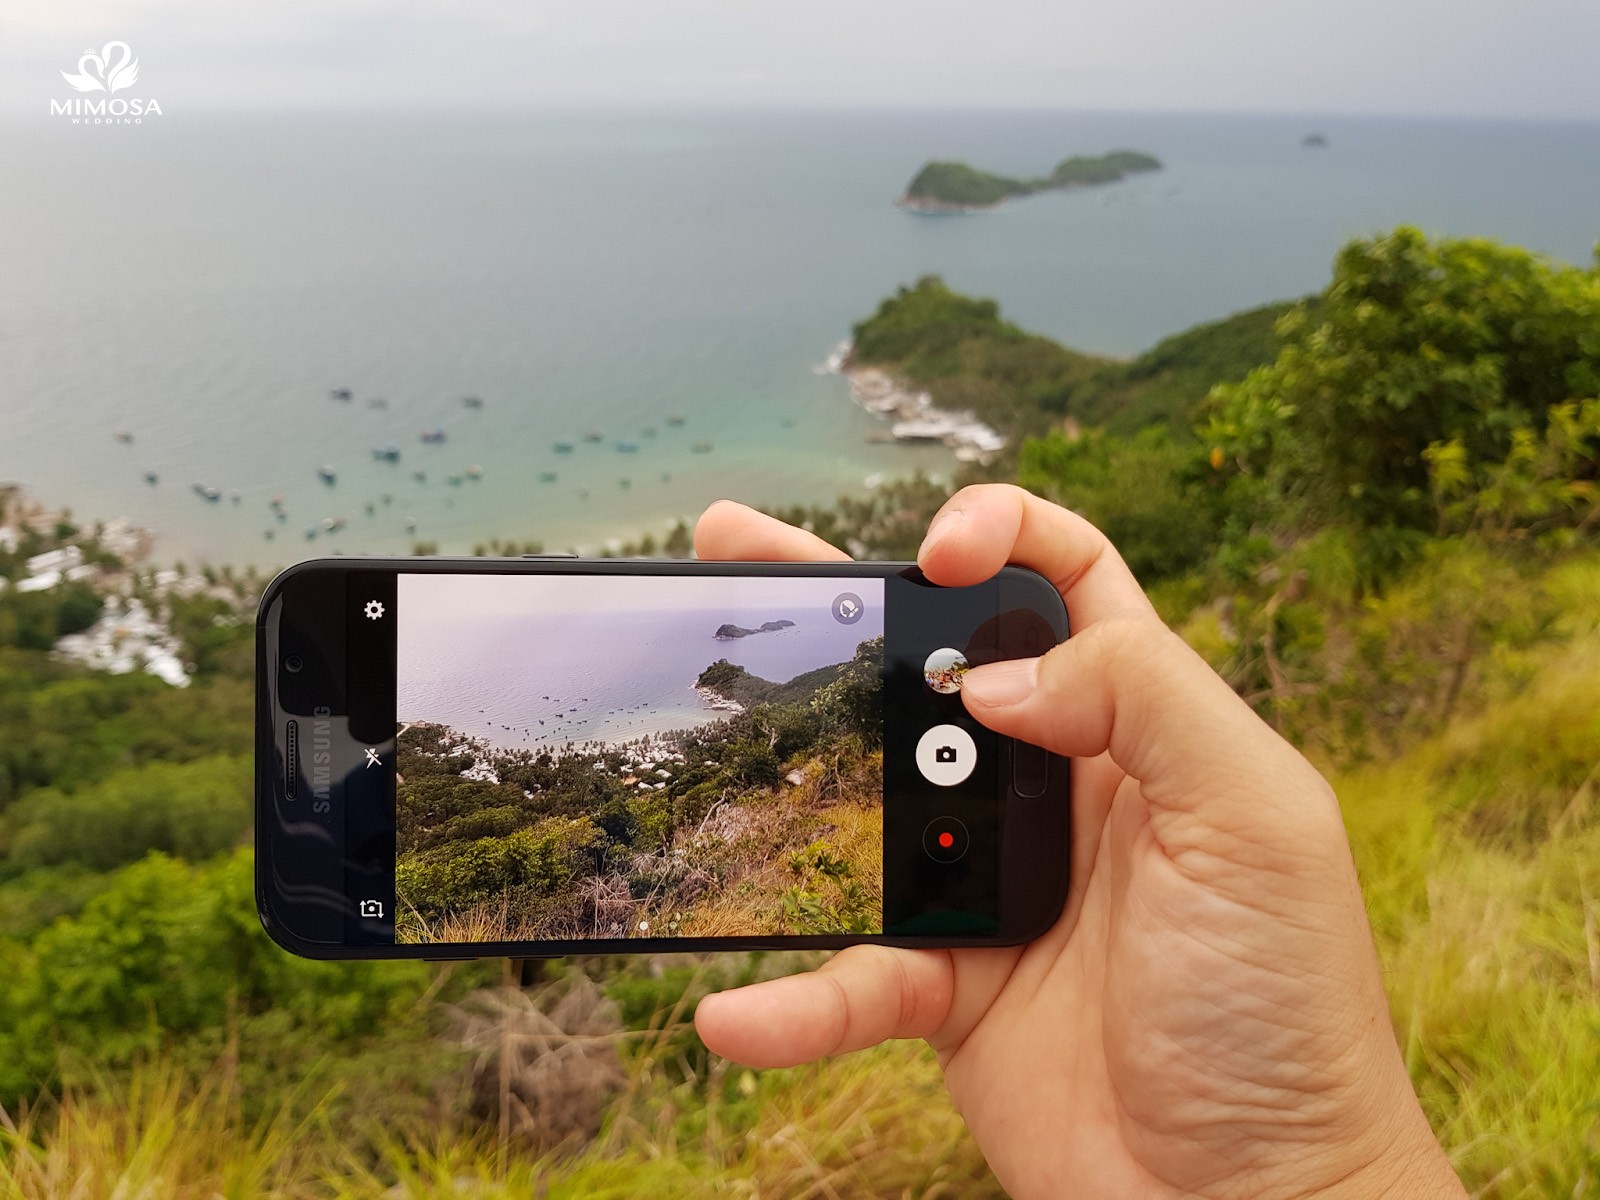 Chia sẻ bí kíp chụp hình đẹp bằng smartphone khi đi du lịch